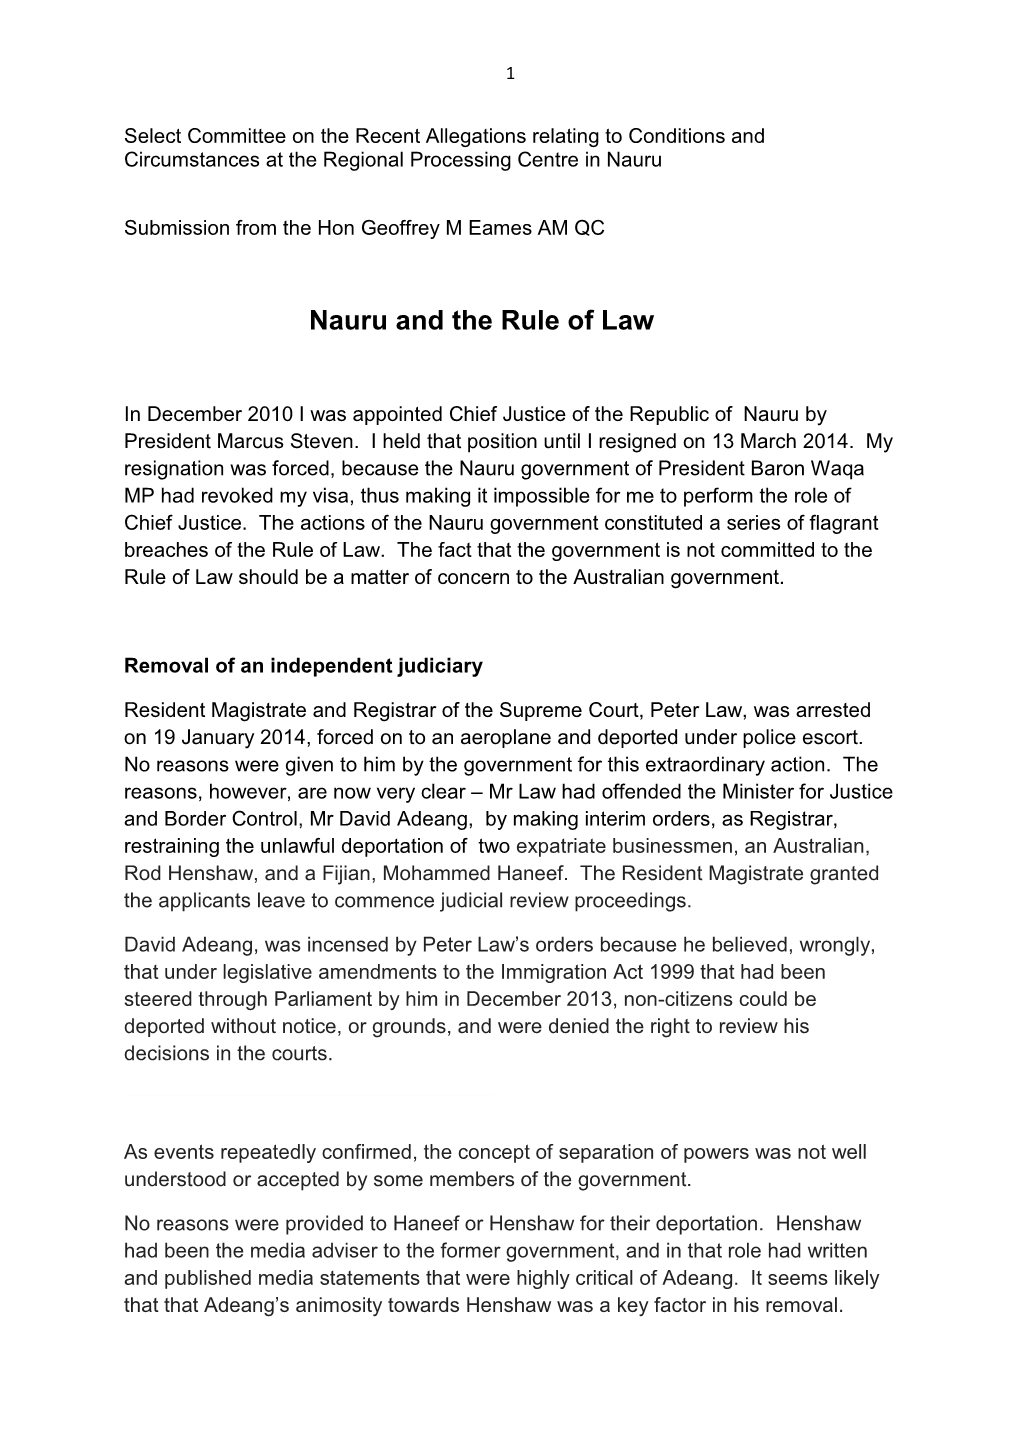 Nauru and the Rule of Law